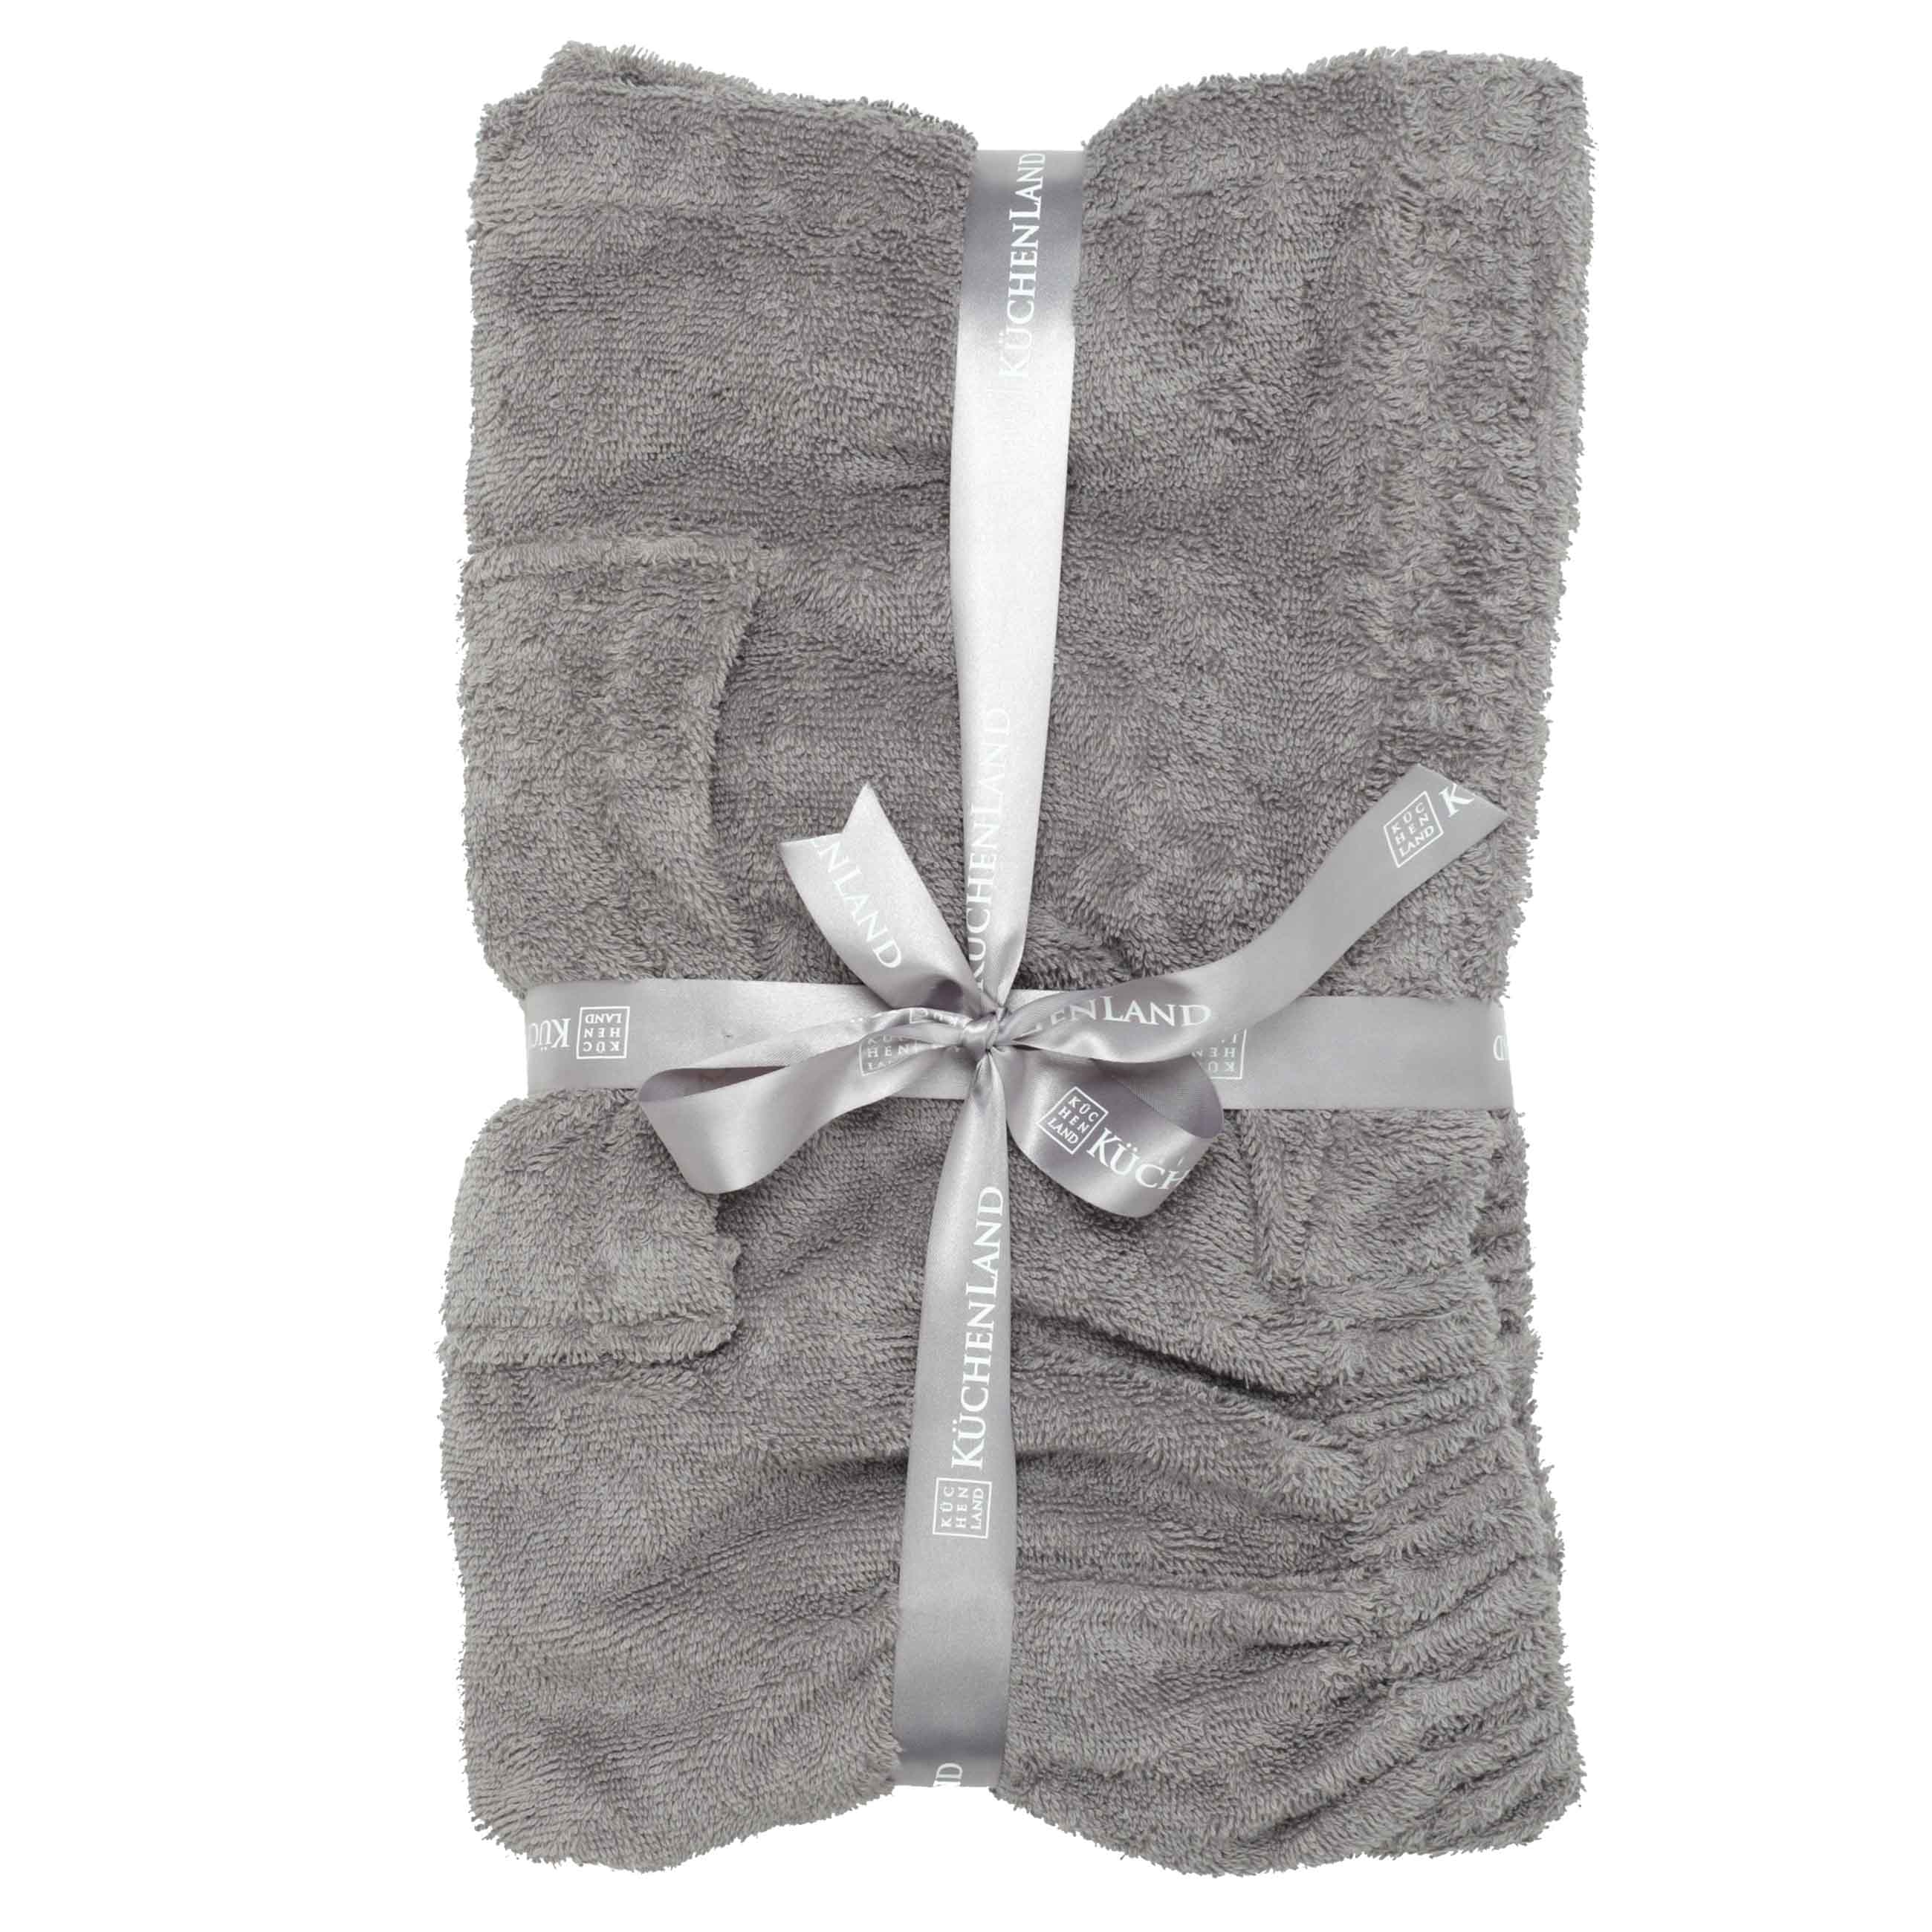 Полотенце-килт мужское, 60х140 см, на липучке, хлопок, темно-серое, Spa towel изображение № 5